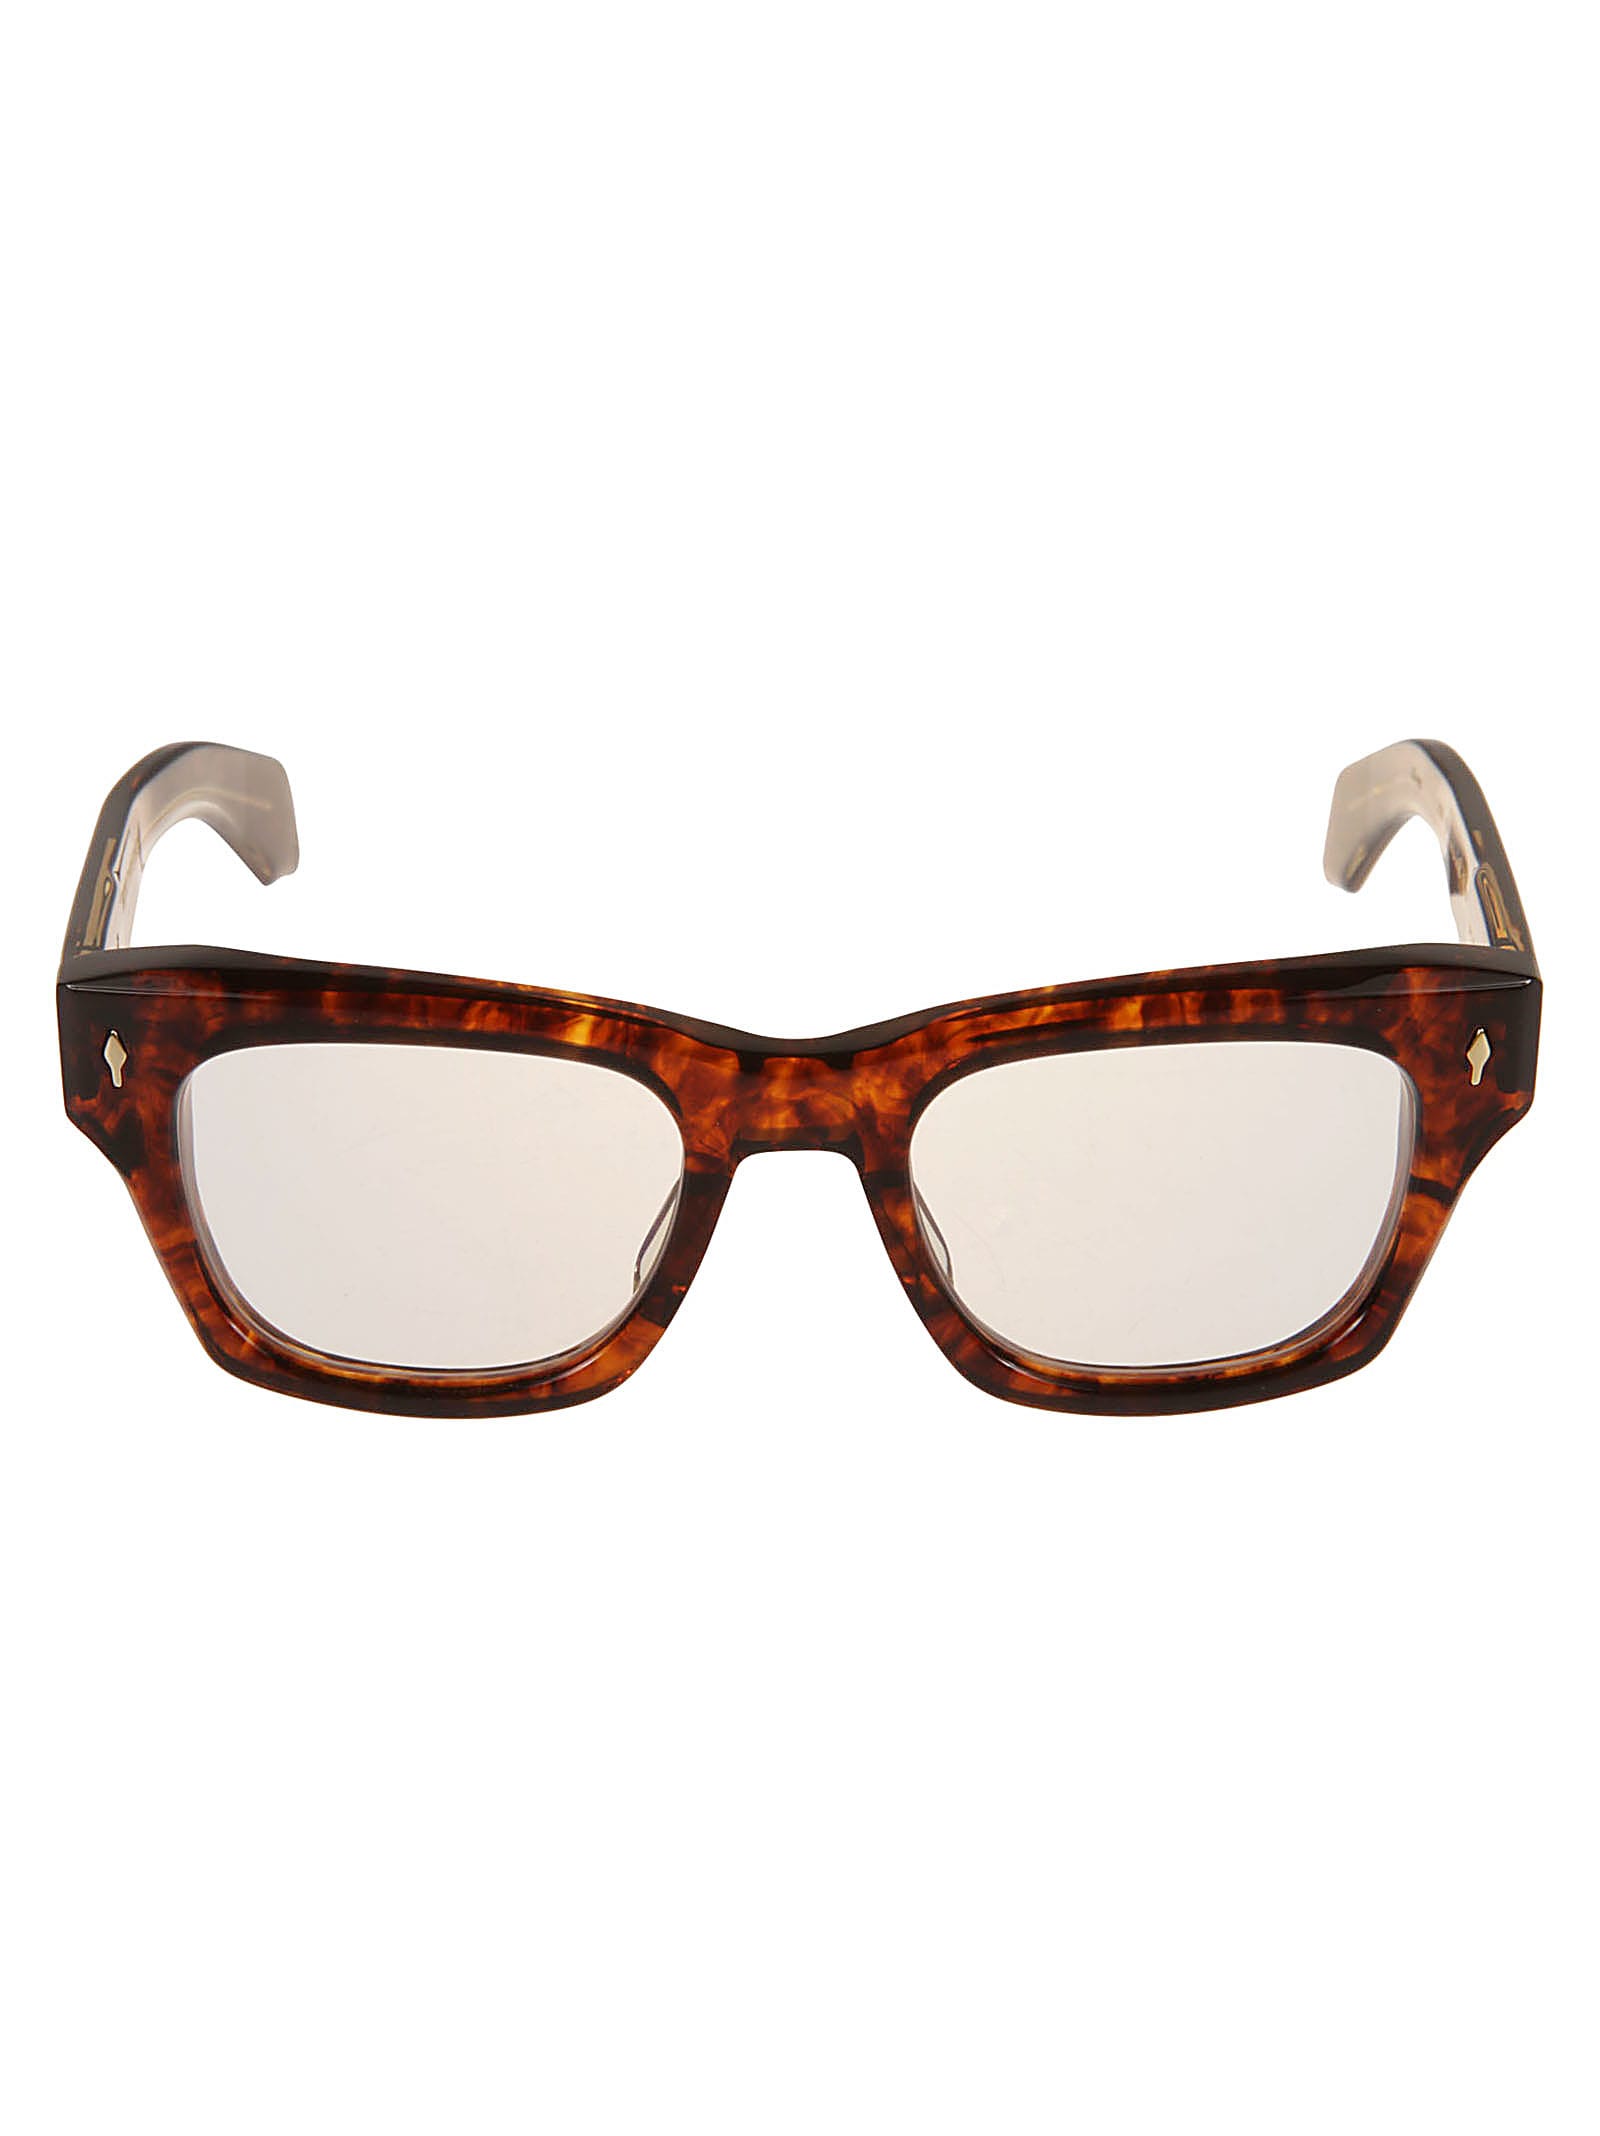 Jacques Marie Mage Zephirin - Noir 7 Glasses | Smart Closet